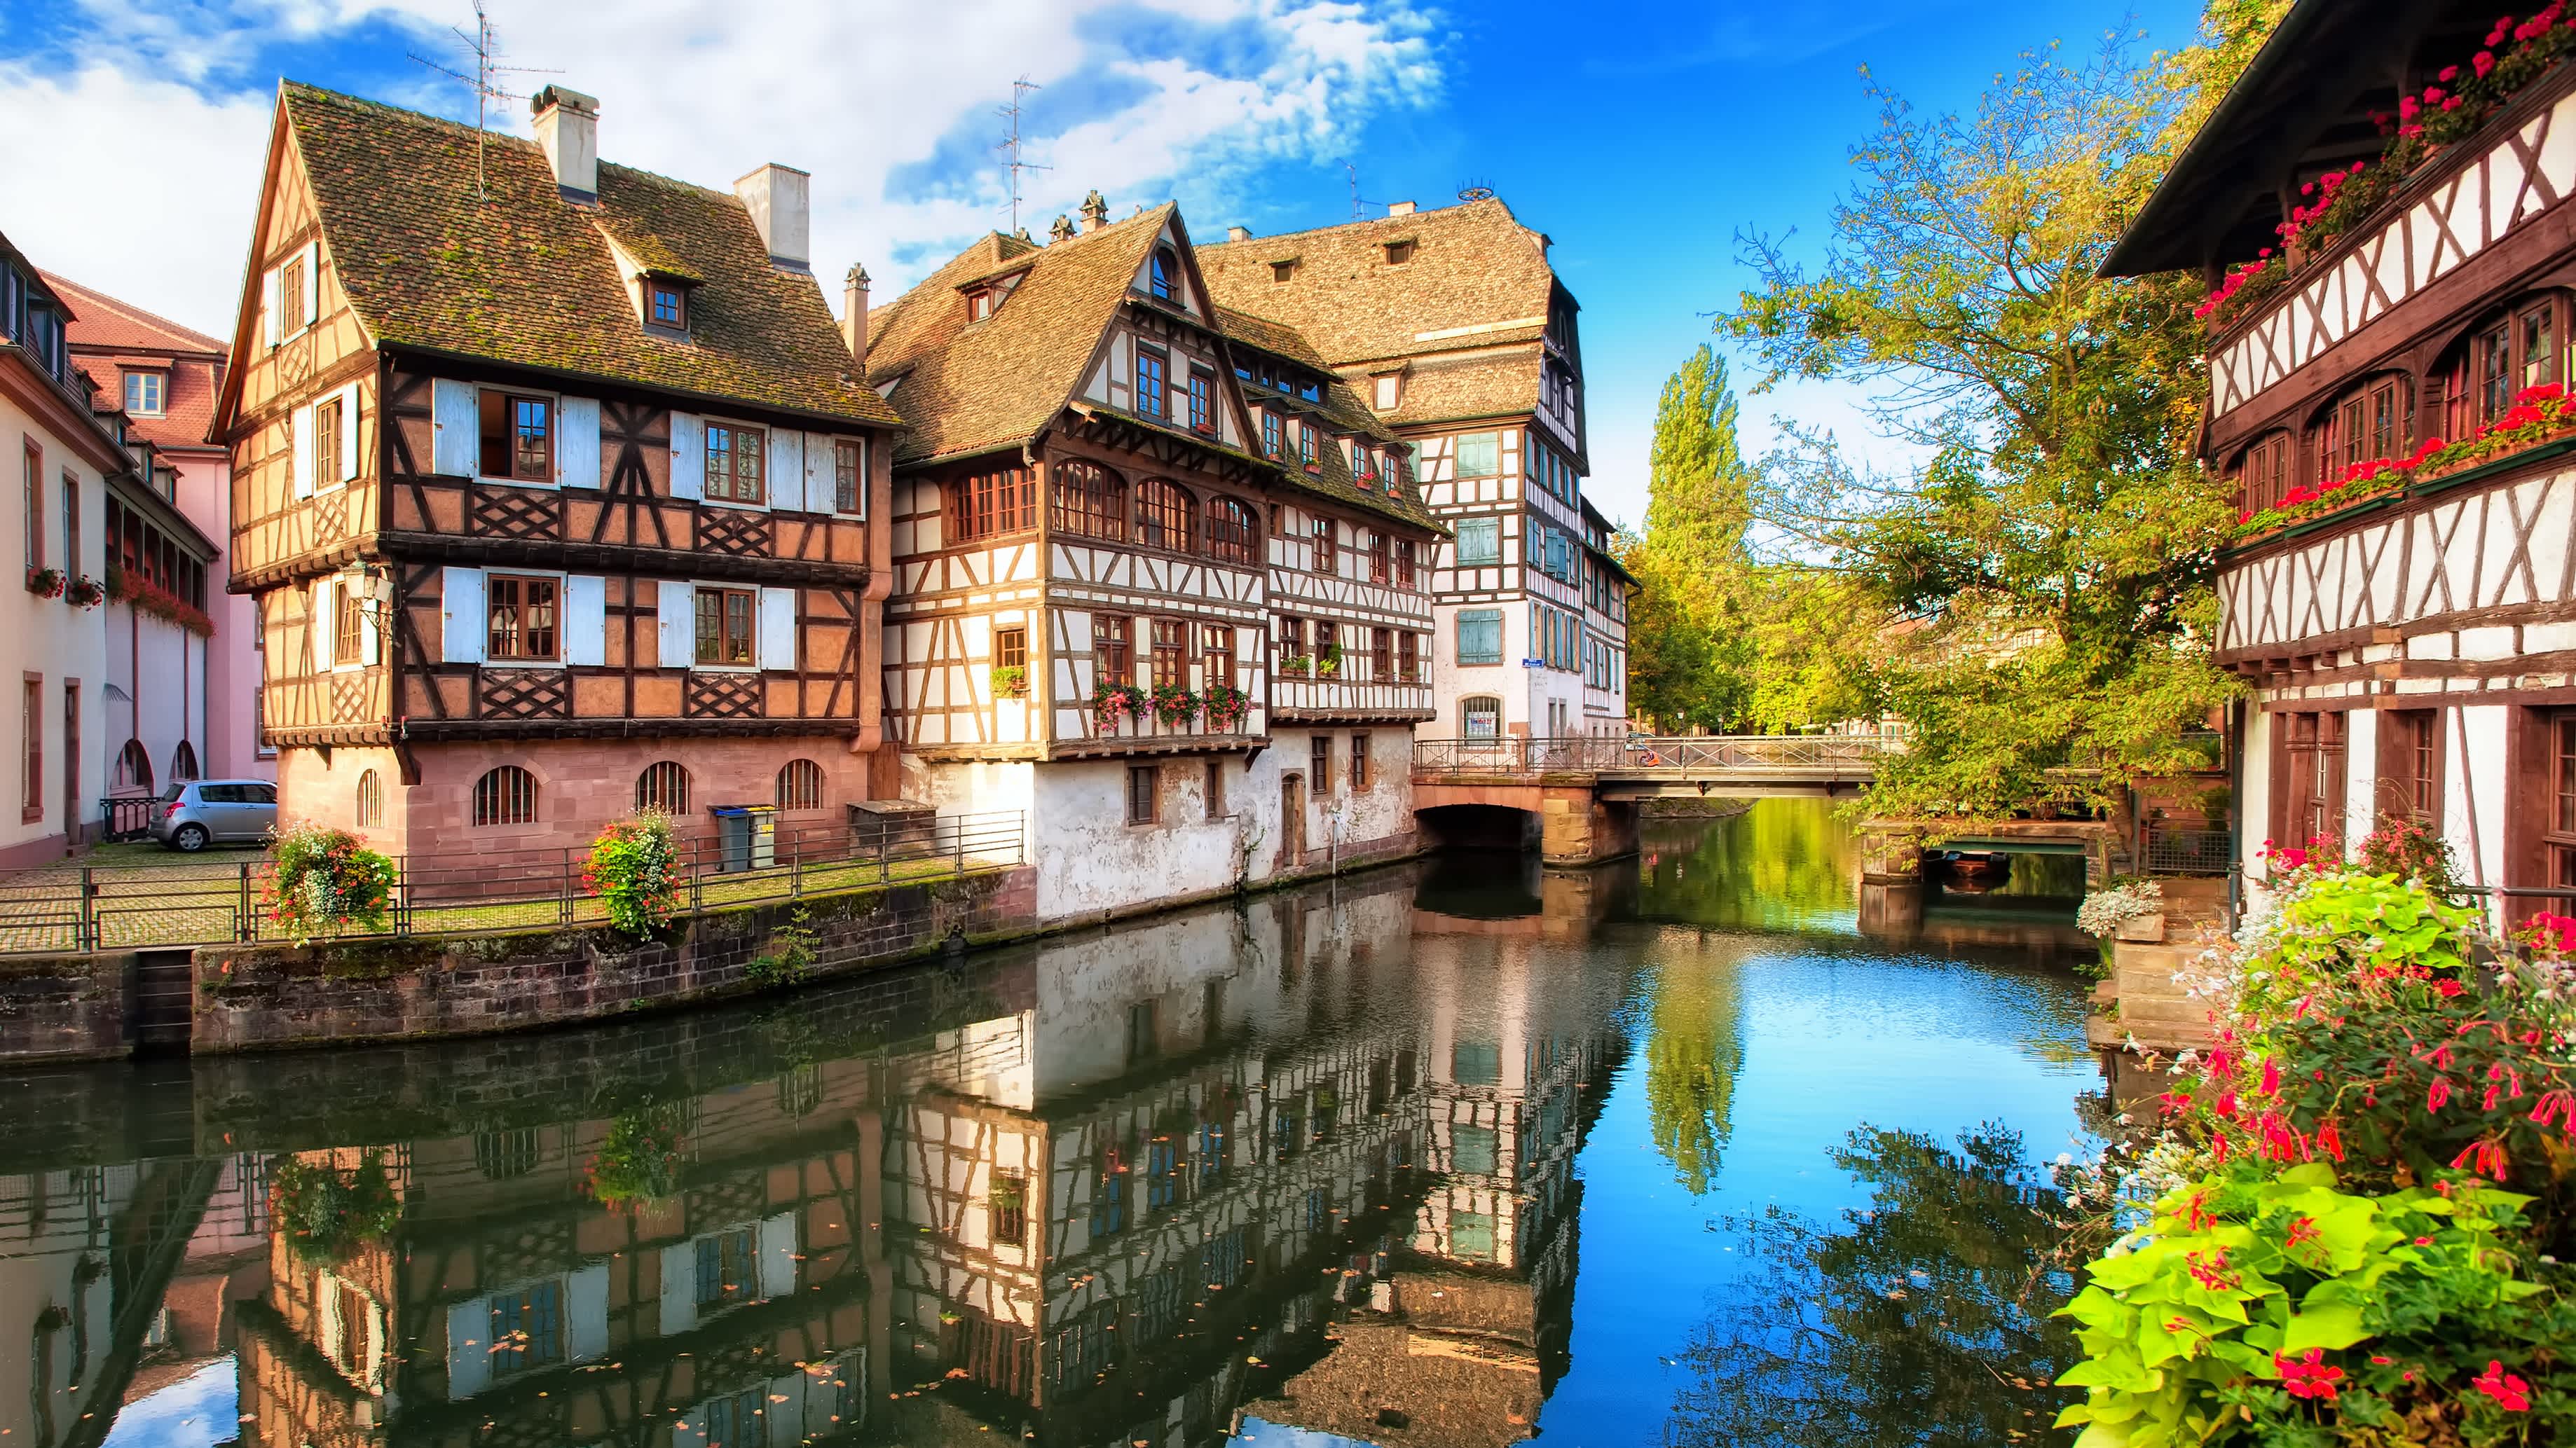 Maisons traditionnelles à colombages dans le quartier de la Petite France à Strasbourg